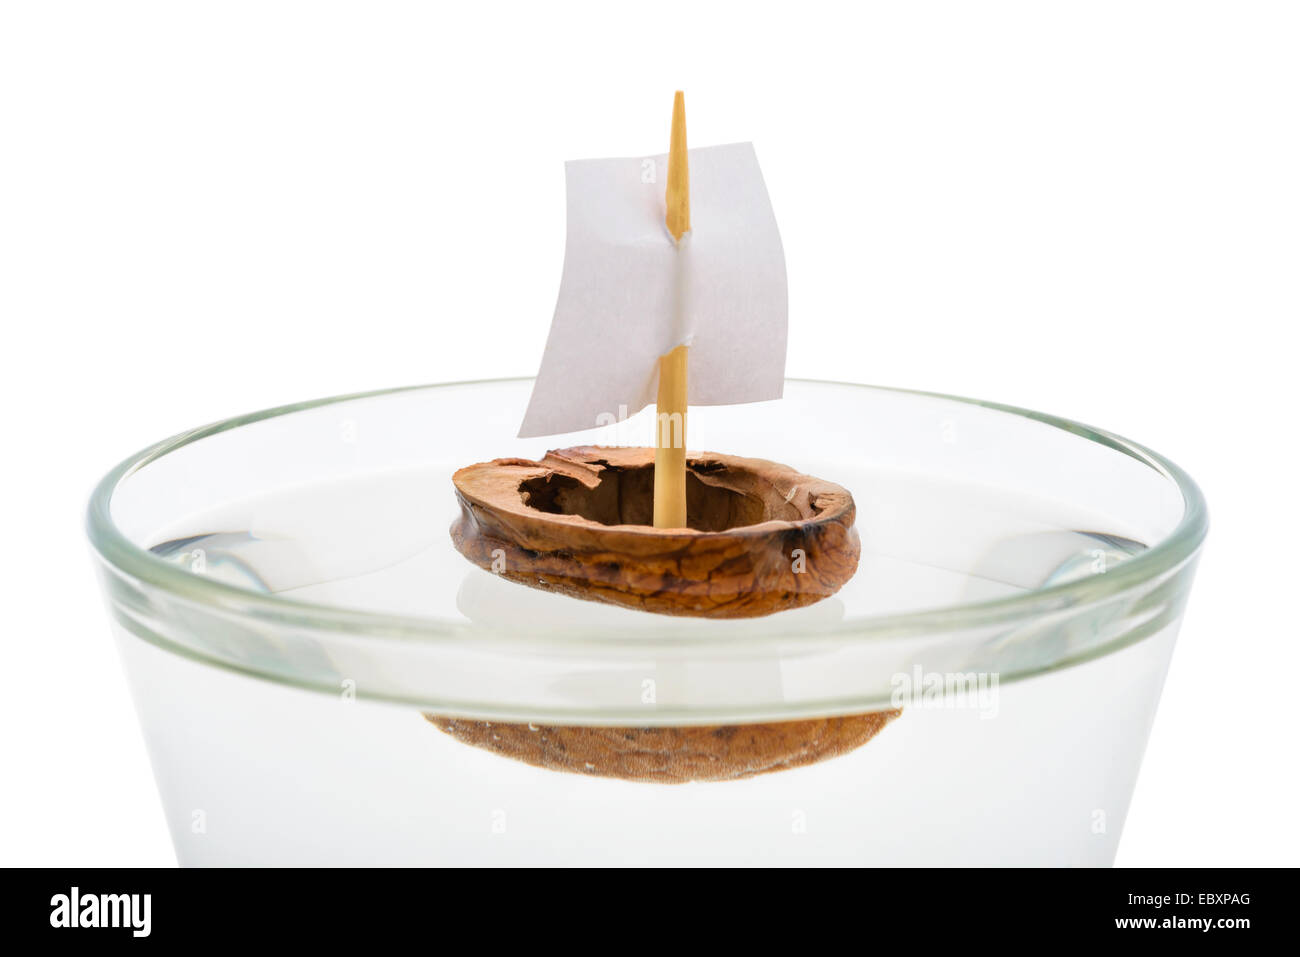 Macro d'une coquille de noix avec une voile de bateau, flottant dans un verre transparent rempli d'eau ou d'alcool. Banque D'Images